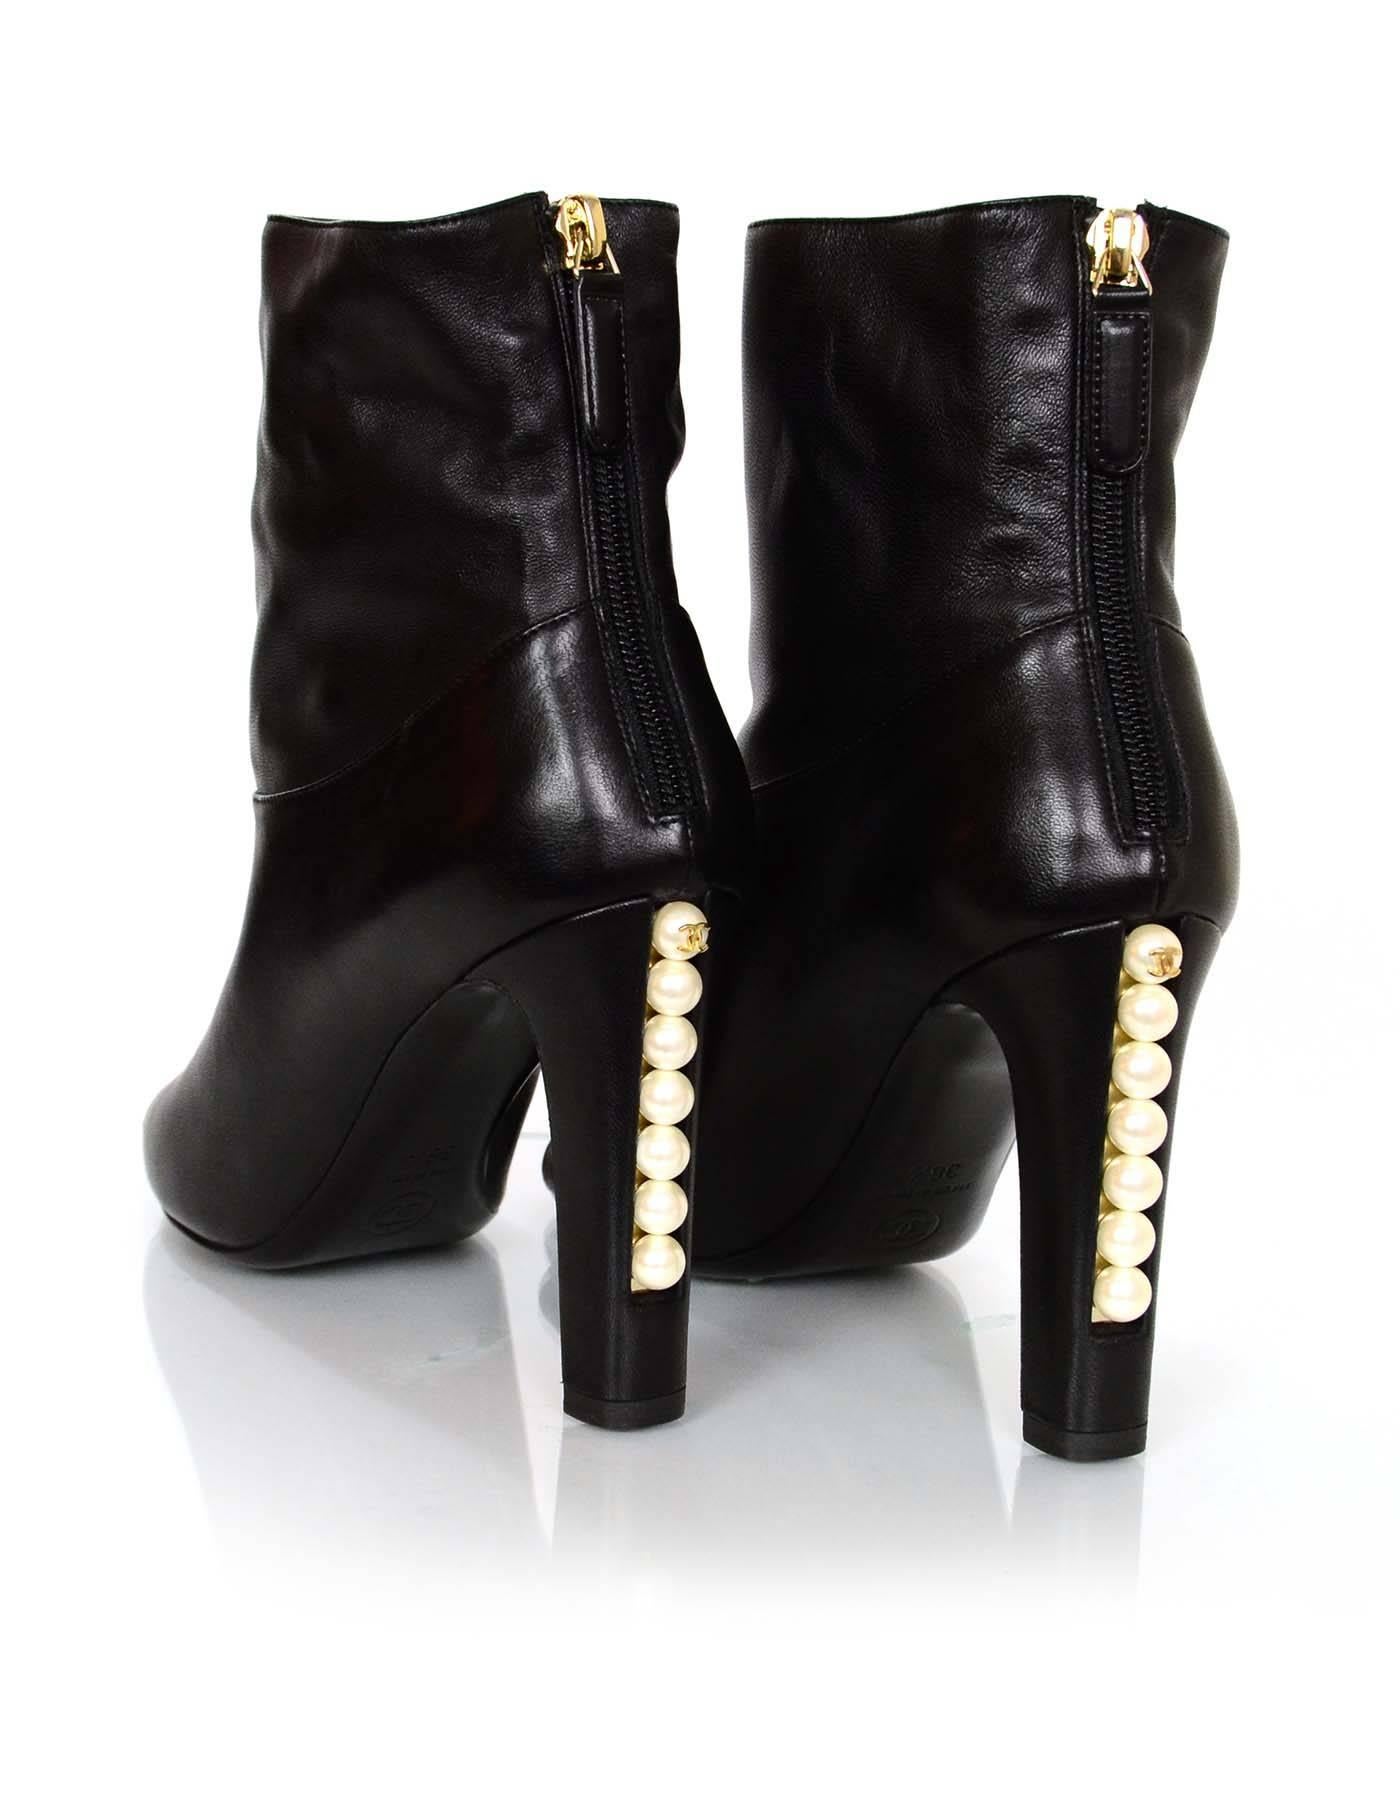 Women's Chanel Black Leather Open-Toe Ankle Boots w/ Pearl Heel Sz 36.5 NEW